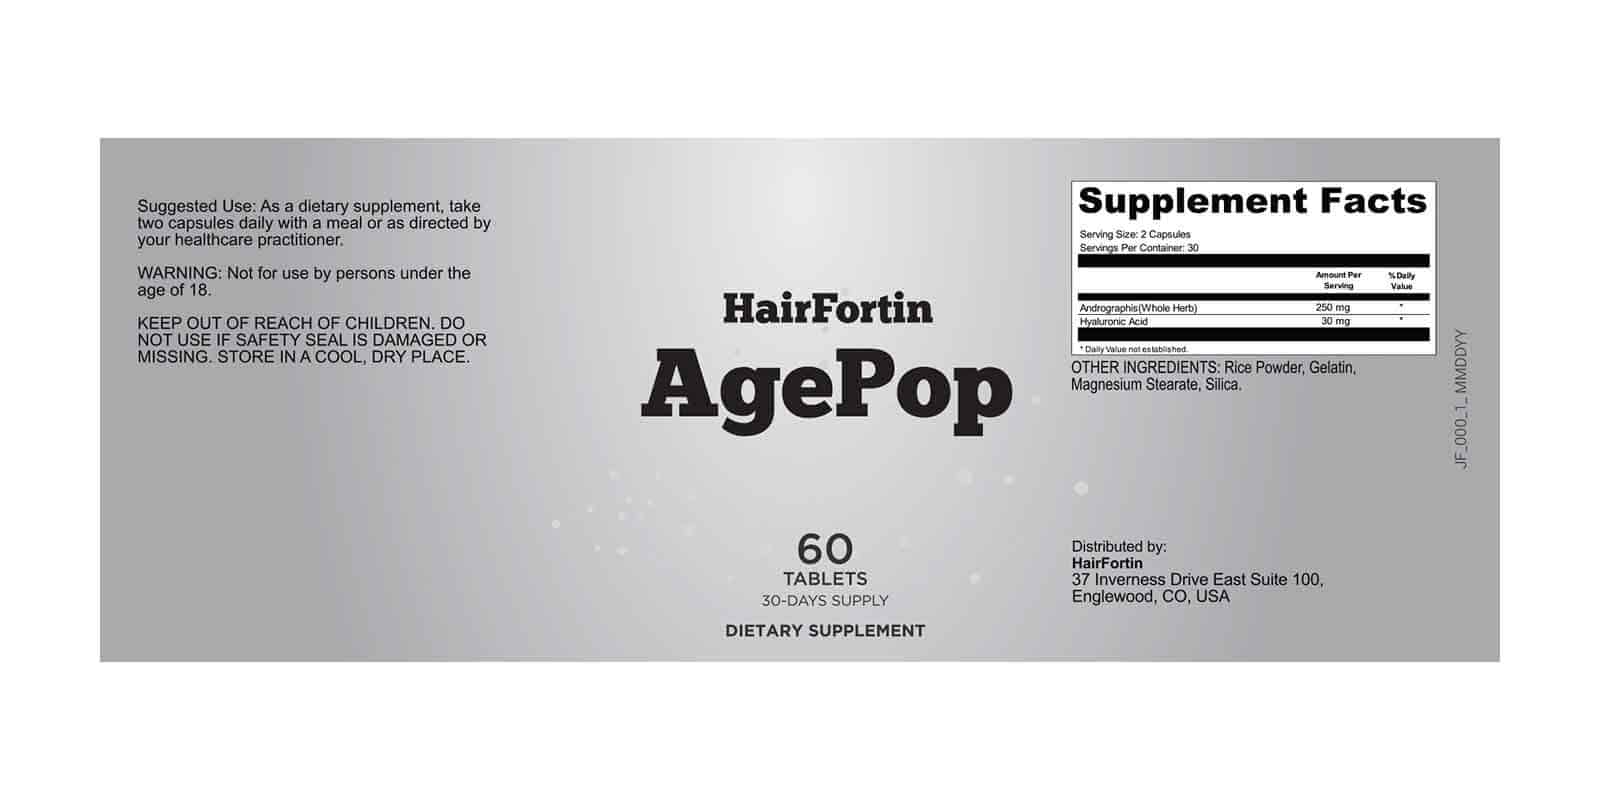 HairFortin Age Pop Dosage